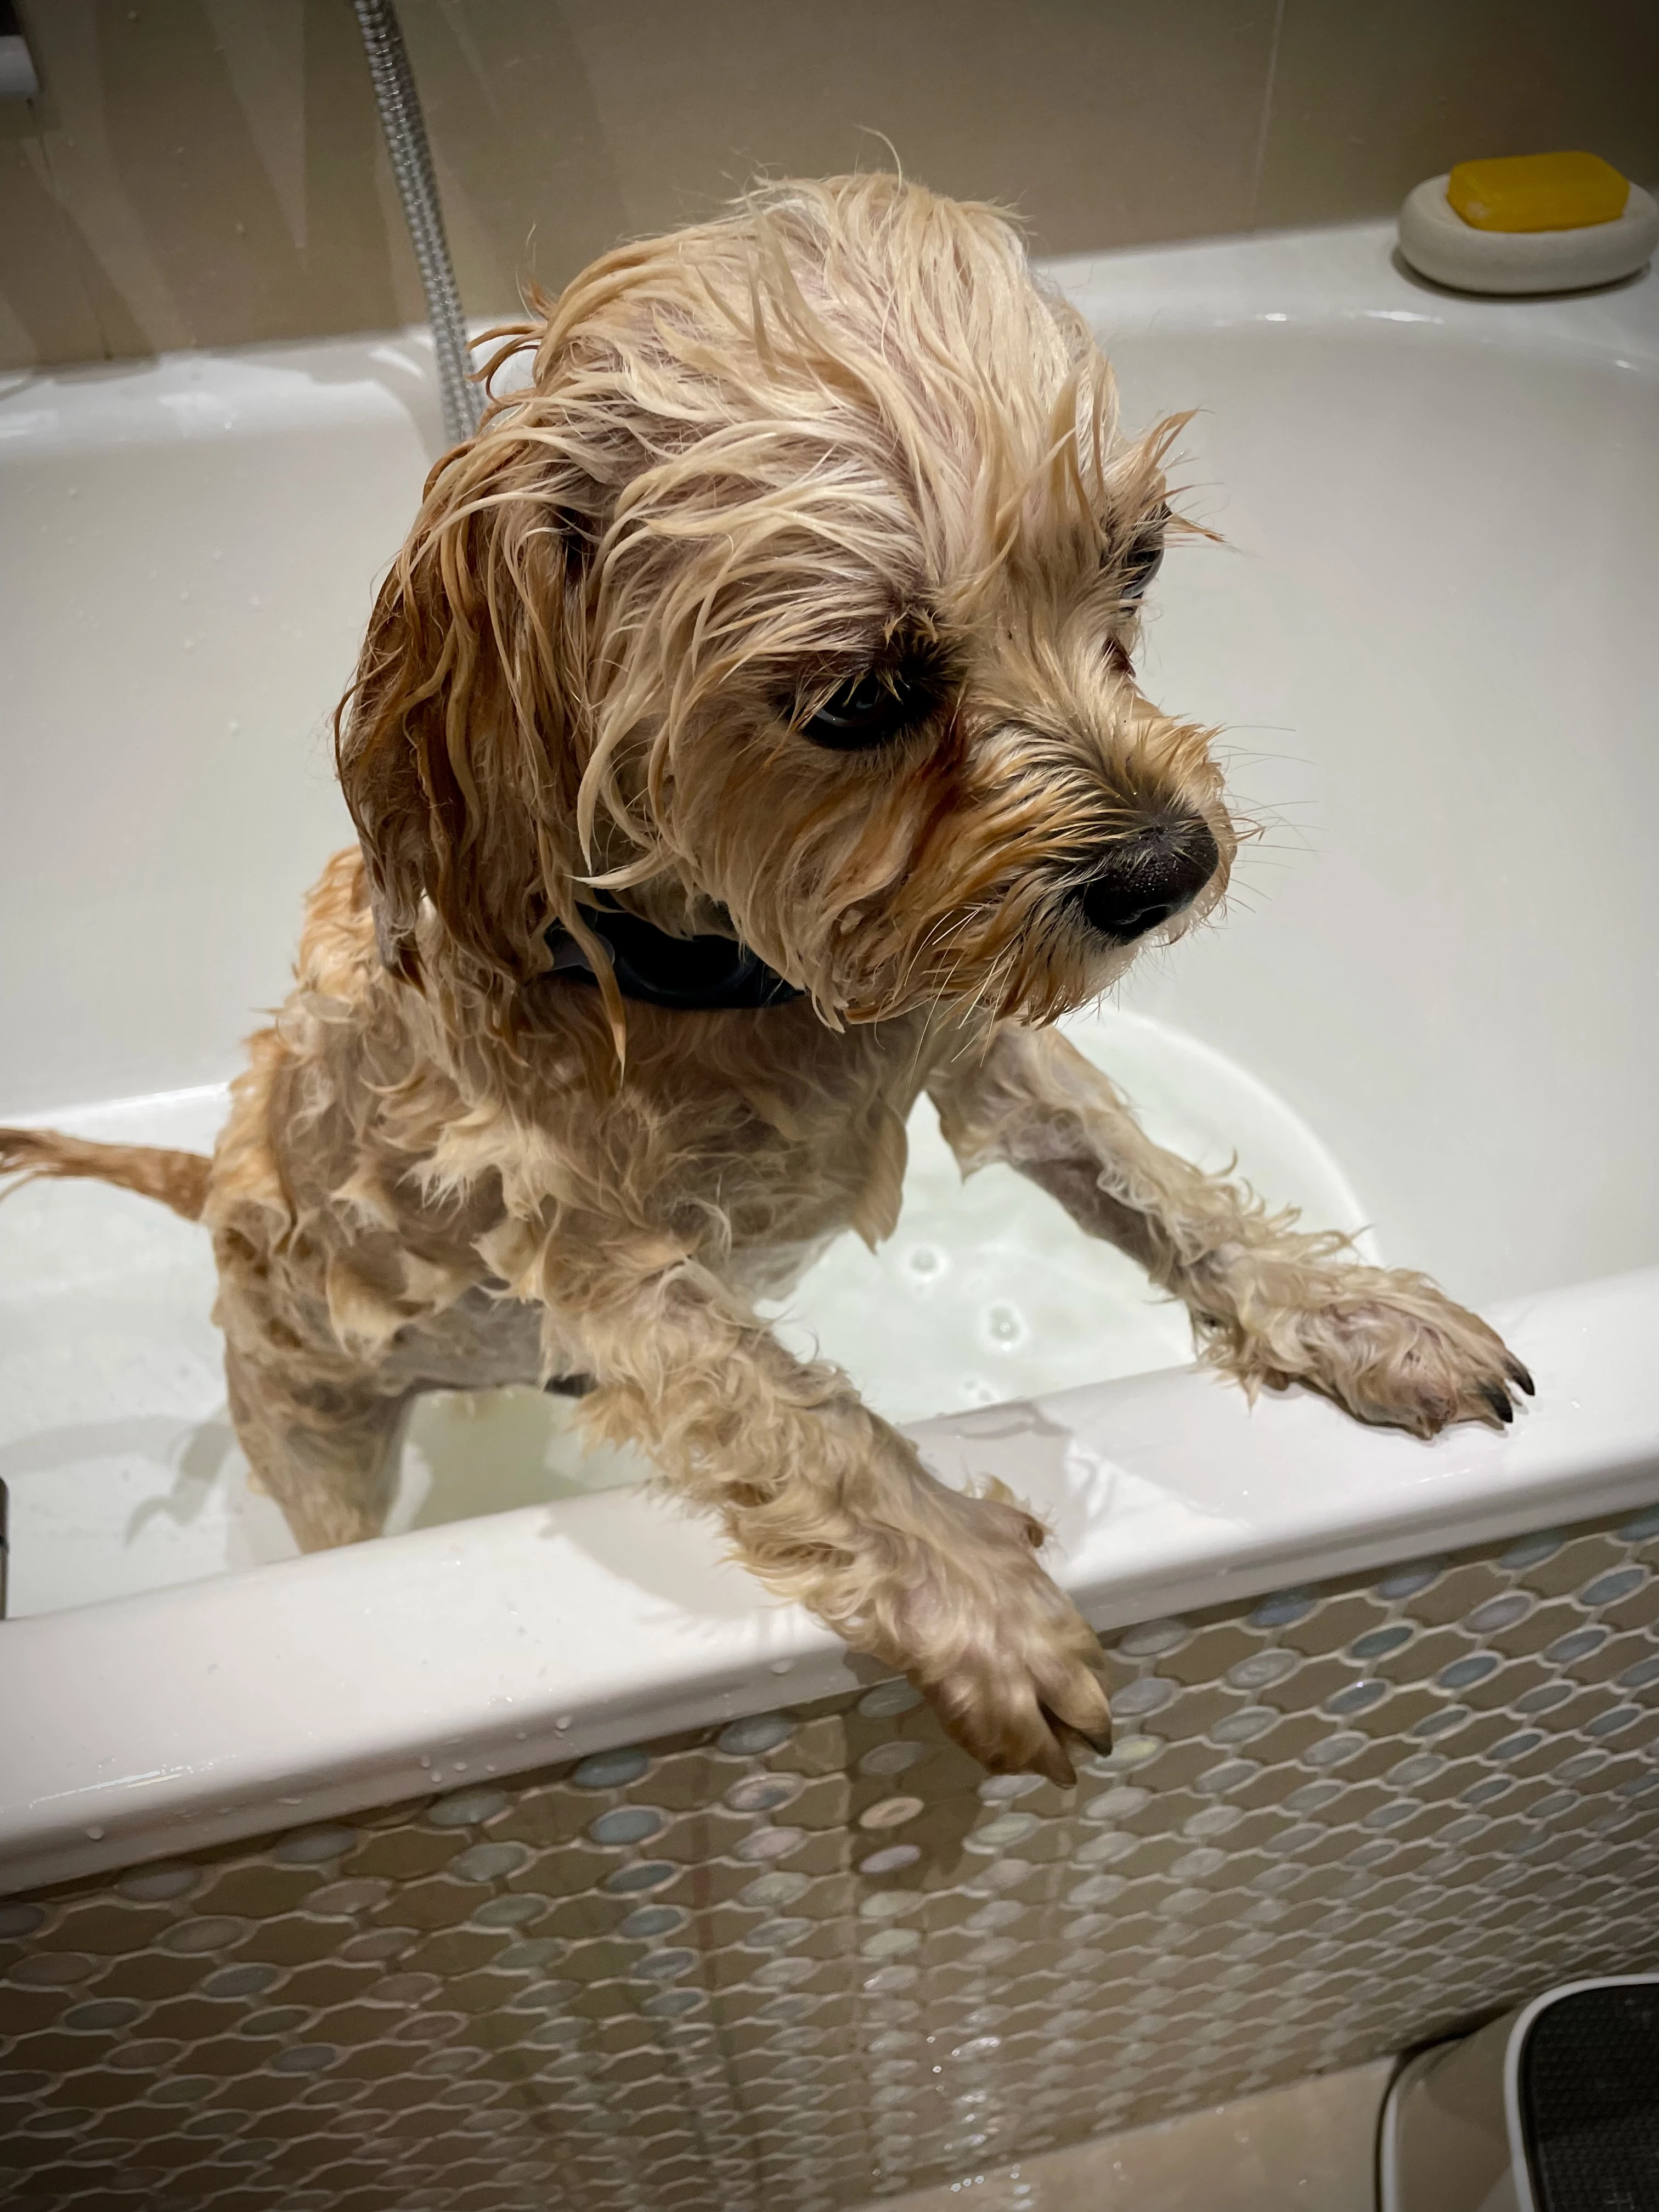 Not a fan of baths, but needs must! 🧼